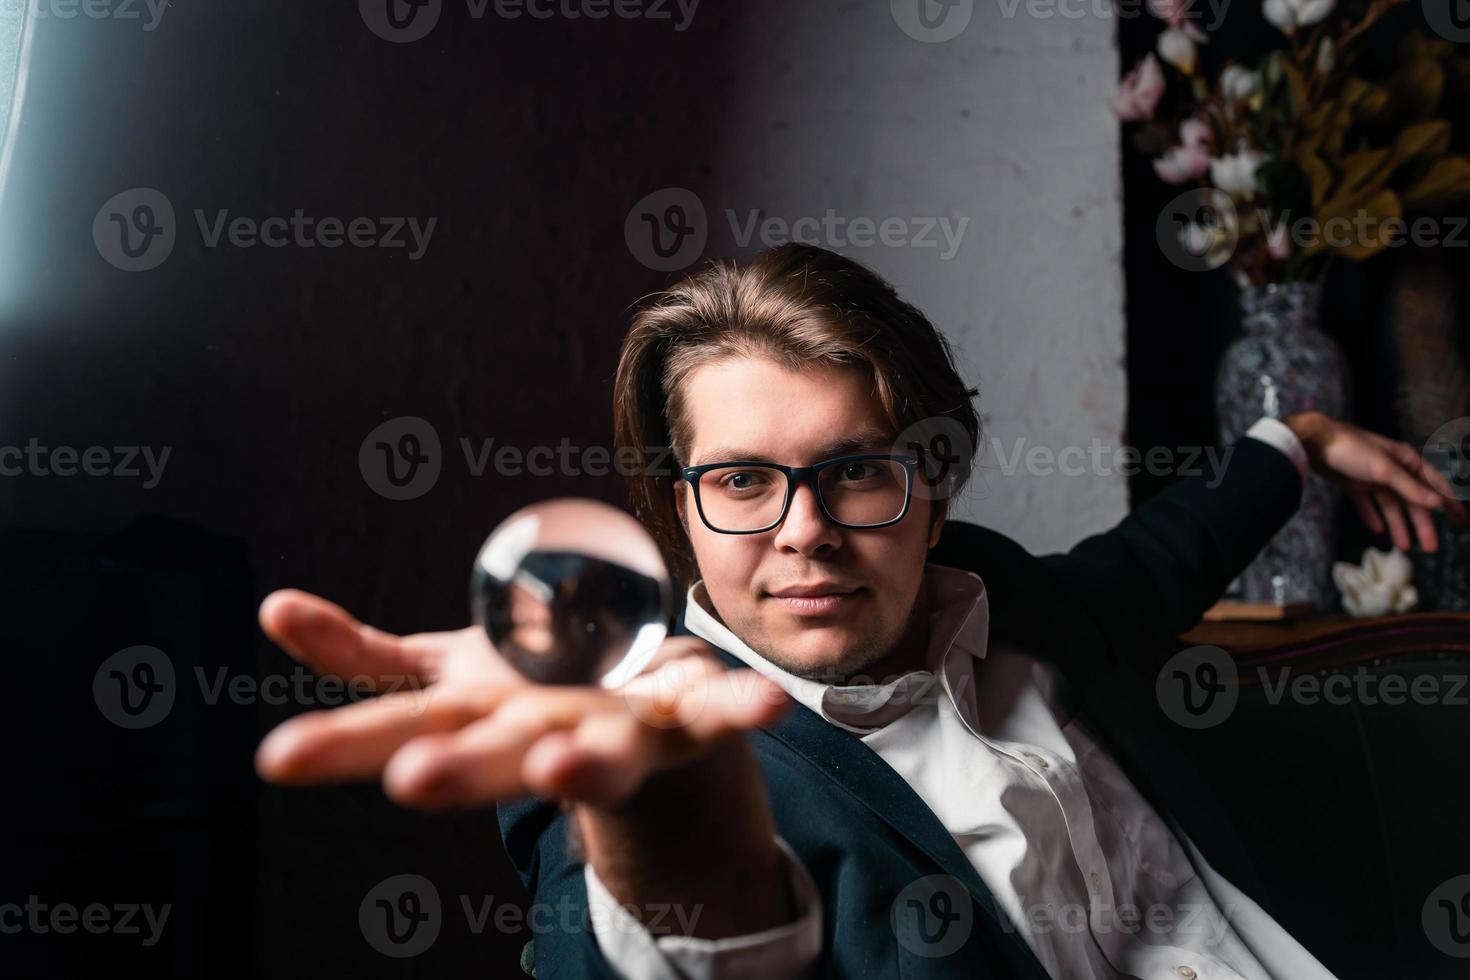 junger Mann, der eine klare, transparente Kristallglaskugel in der Hand hält foto